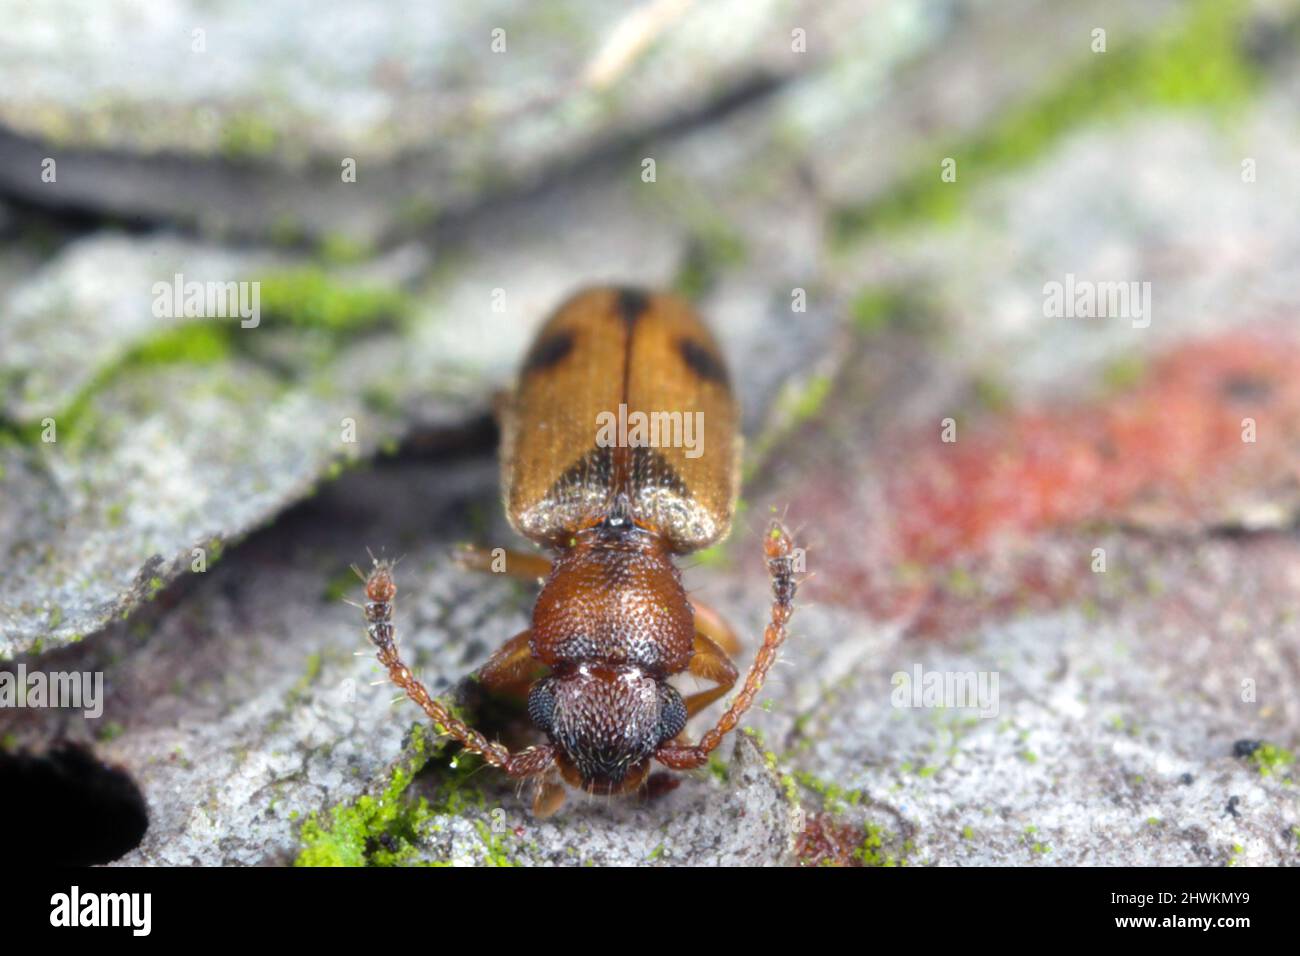 Silvan flat bark beetle, Psammoecus bipunctatus on bark Stock Photo